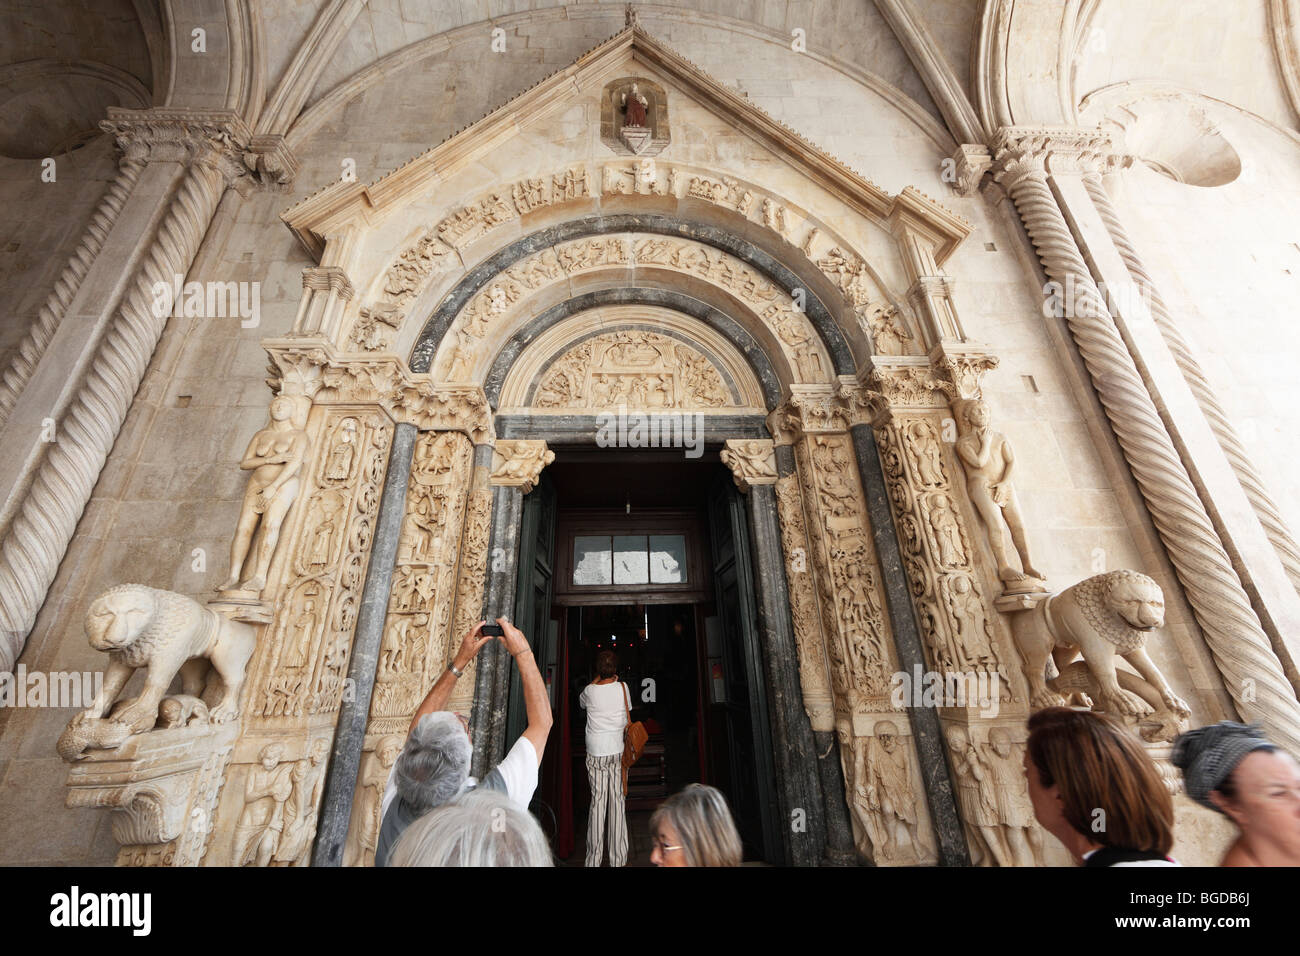 Westportal der Kathedrale von St. Lawrence, Katedrala Sv. Lovre, Trogir, Dalmatien, Kroatien, Europa Stockfoto